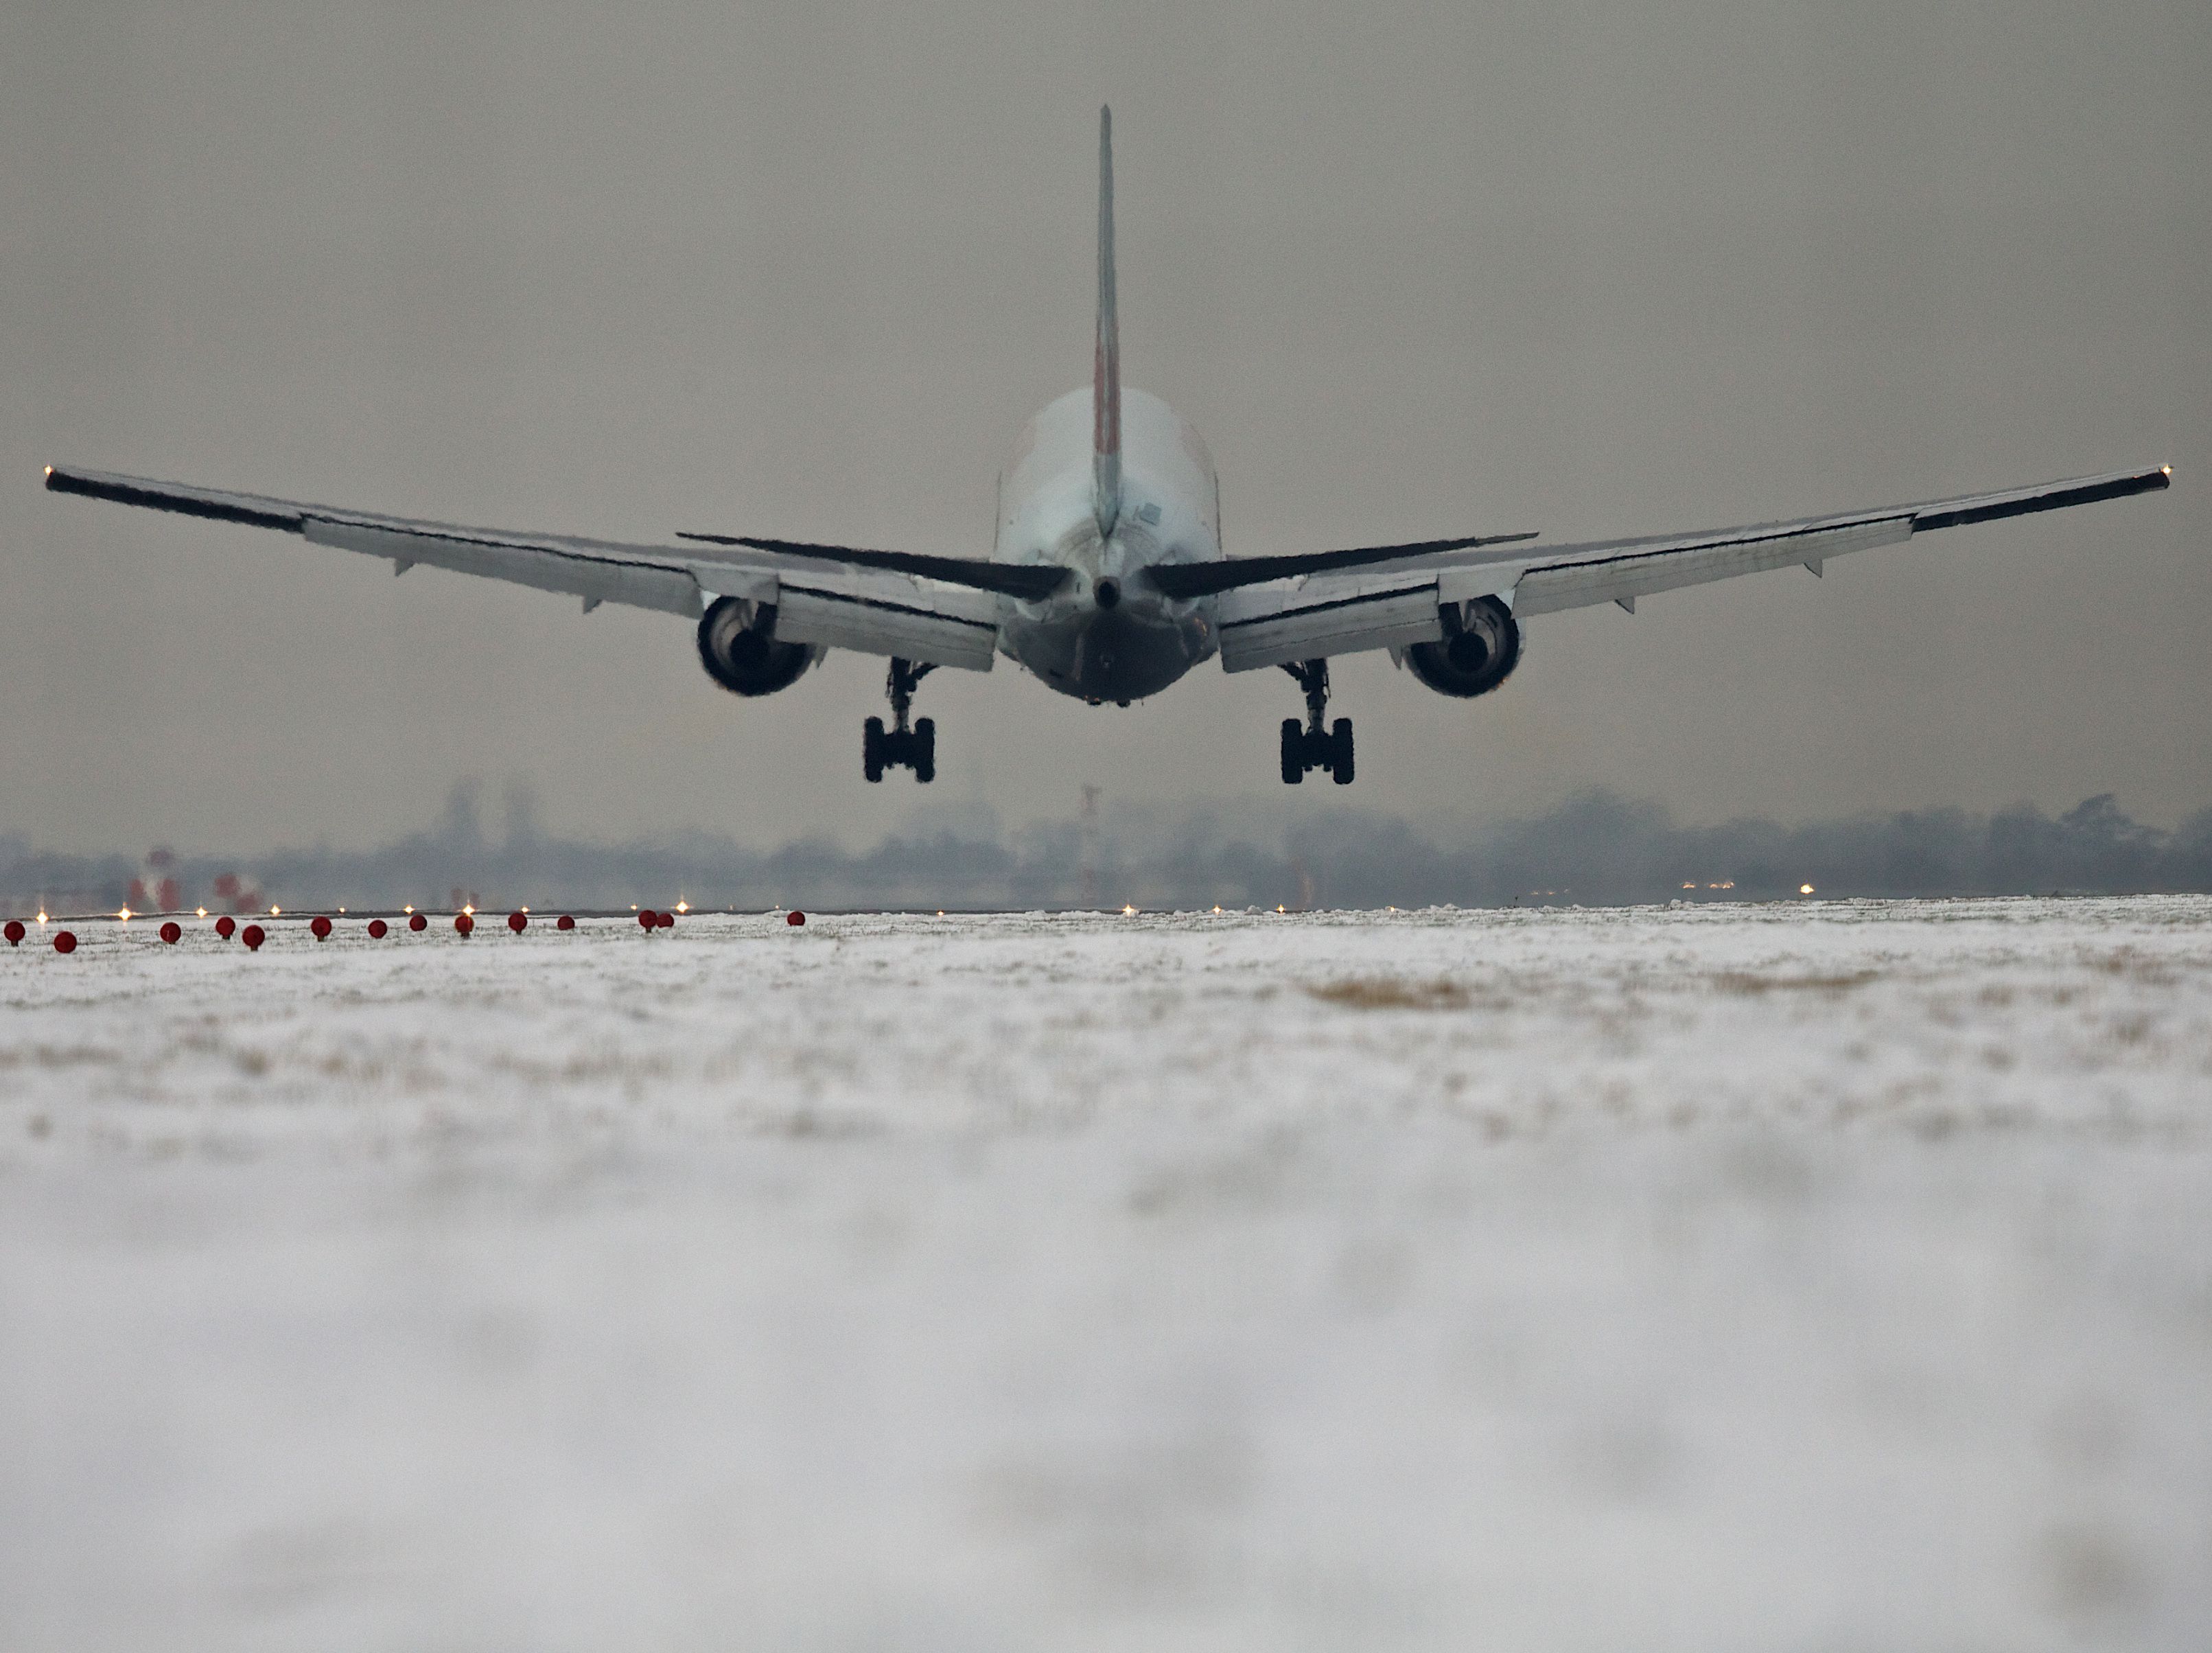 Airplane Silhouette Landing on Snowy Runway 